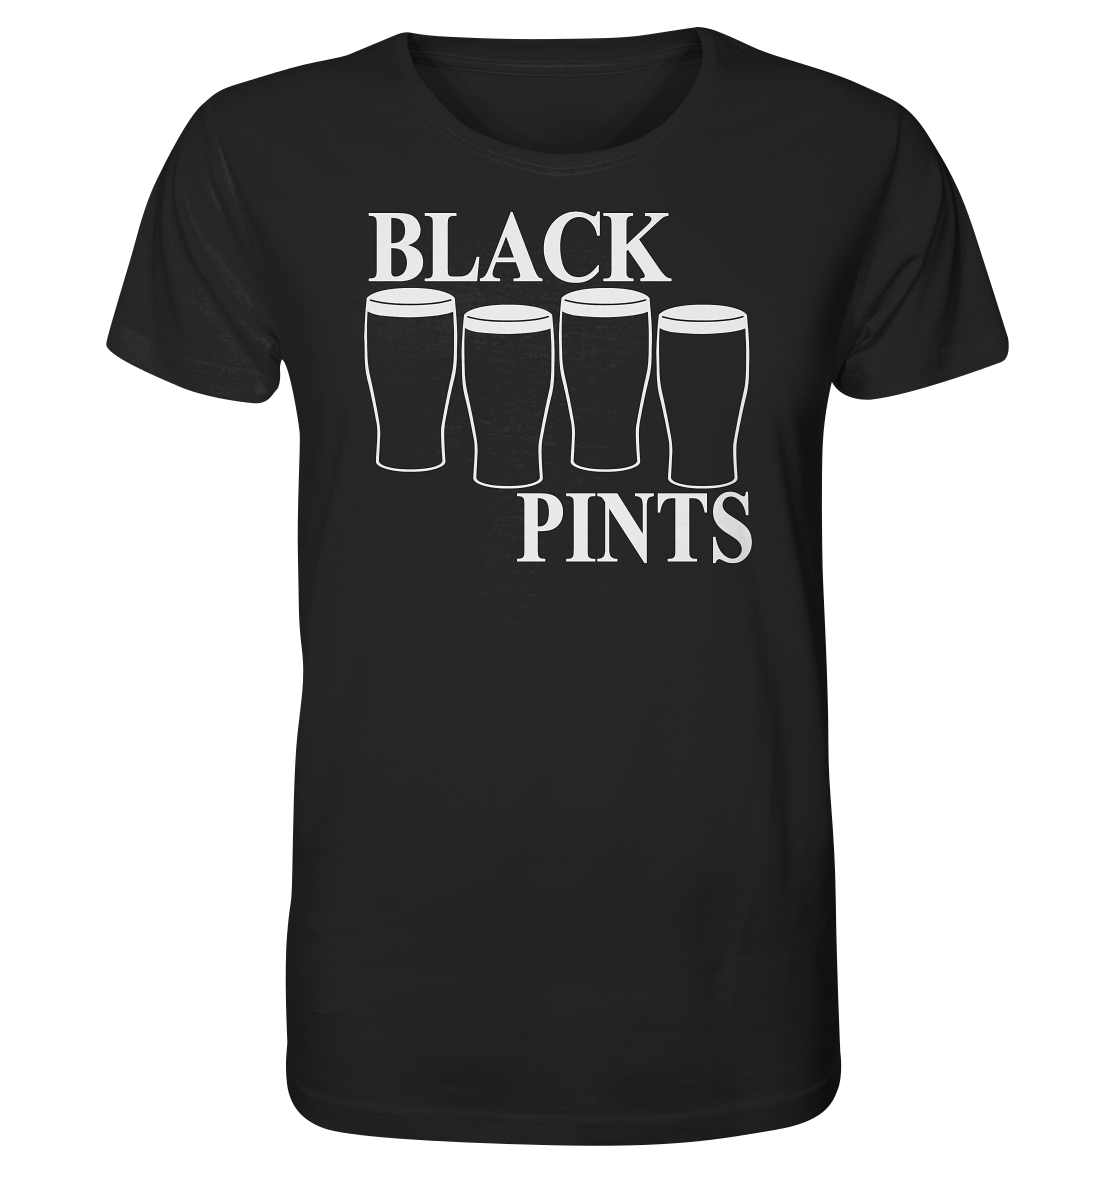 Black Pints - Organic Shirt